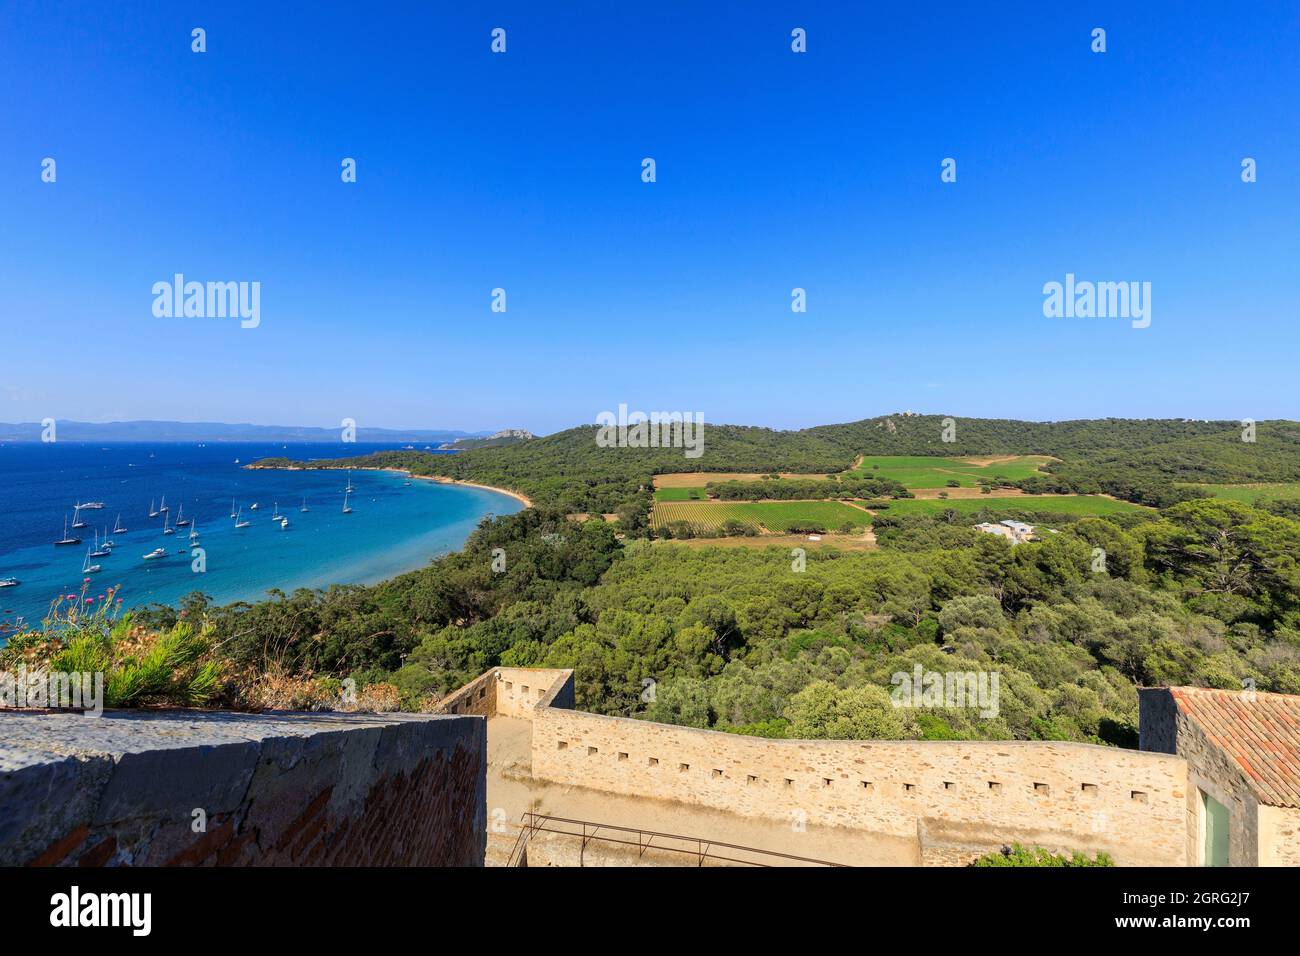 France, Var, Iles d'Hyeres, Port Cros national park, Porquerolles island, Carmignac Foundation Stock Photo